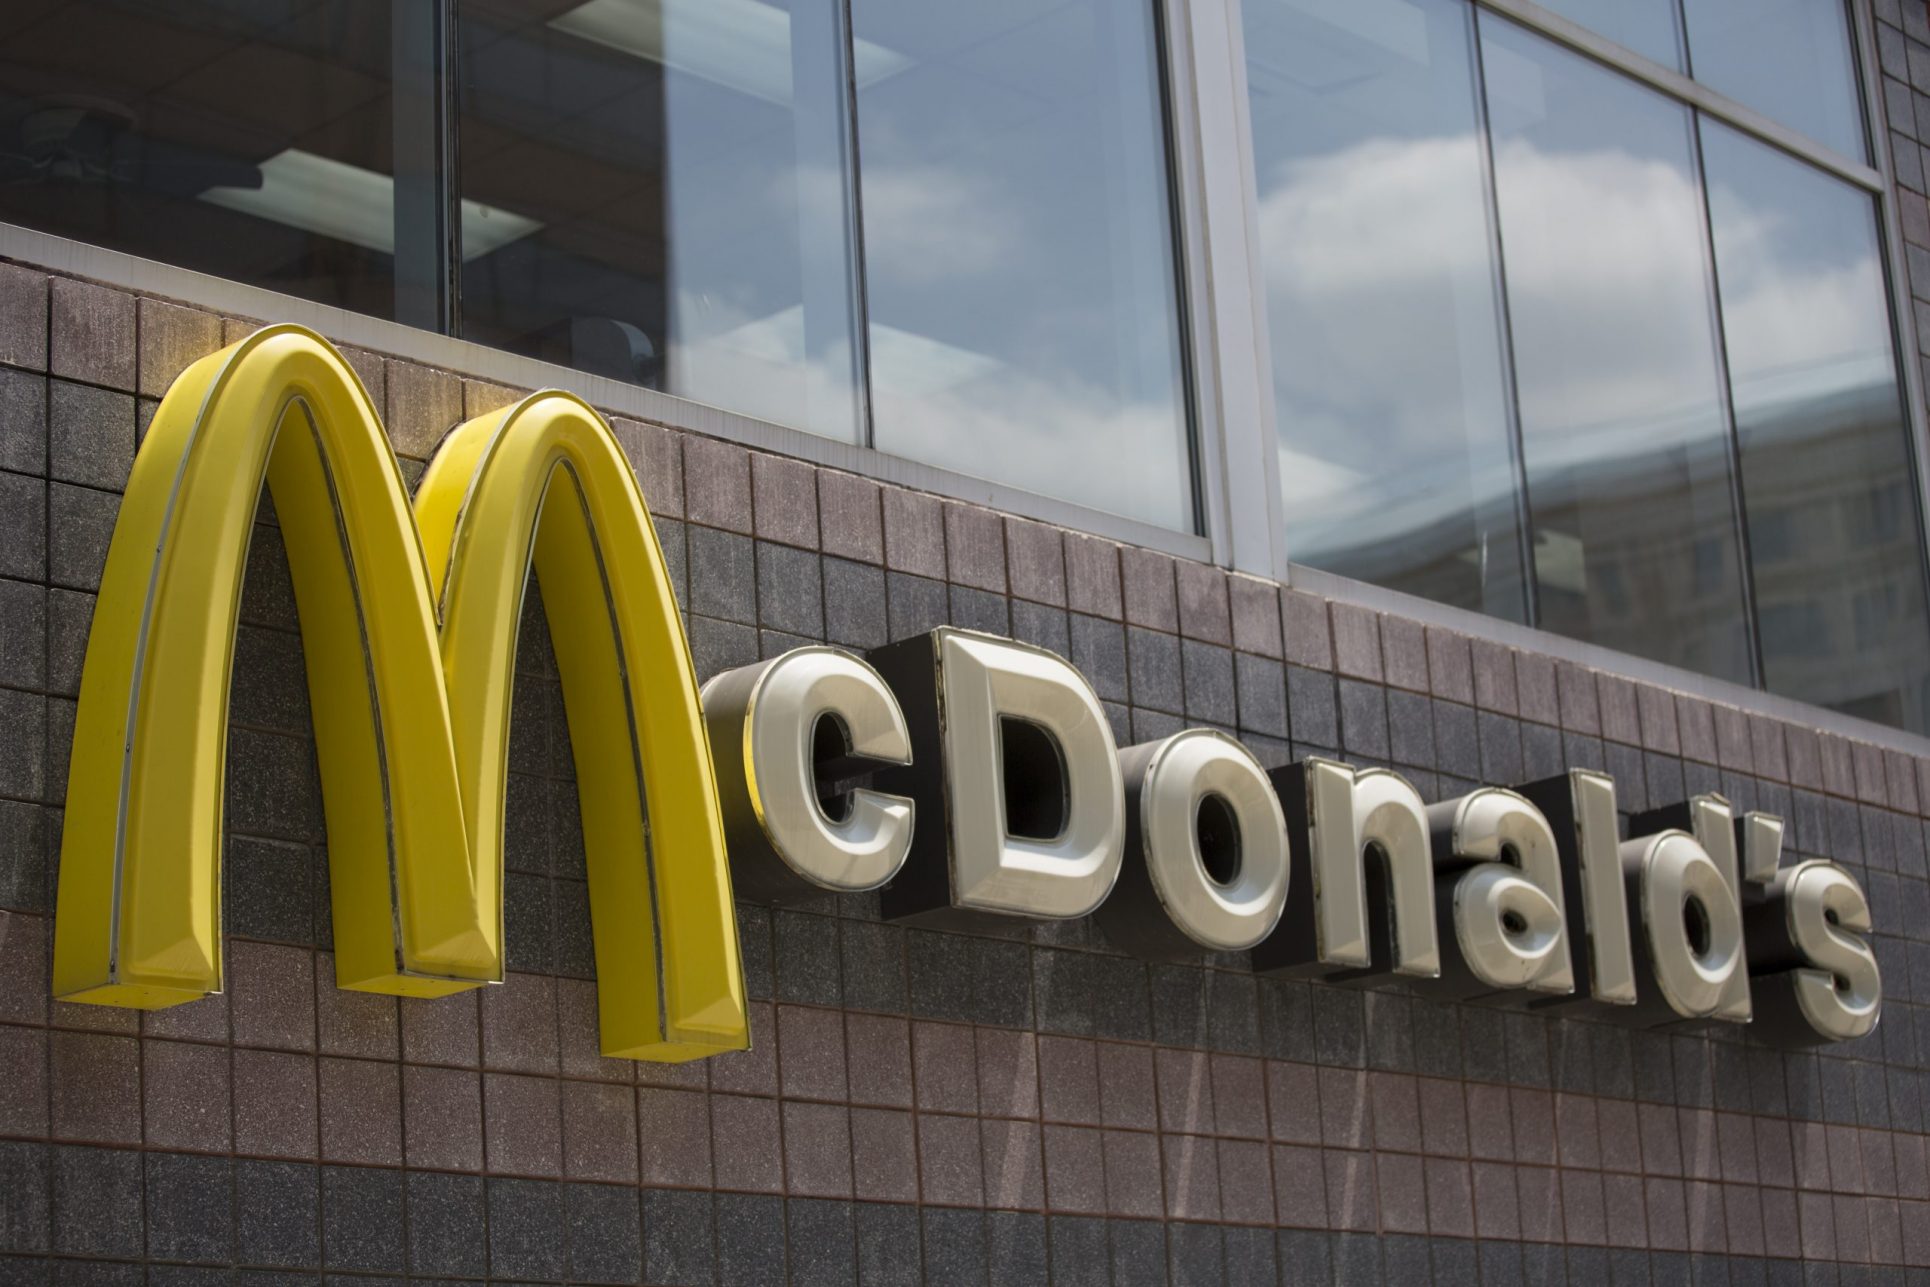 McDonald’s alerta sobre estafas por supuesta contratación en Costa Rica